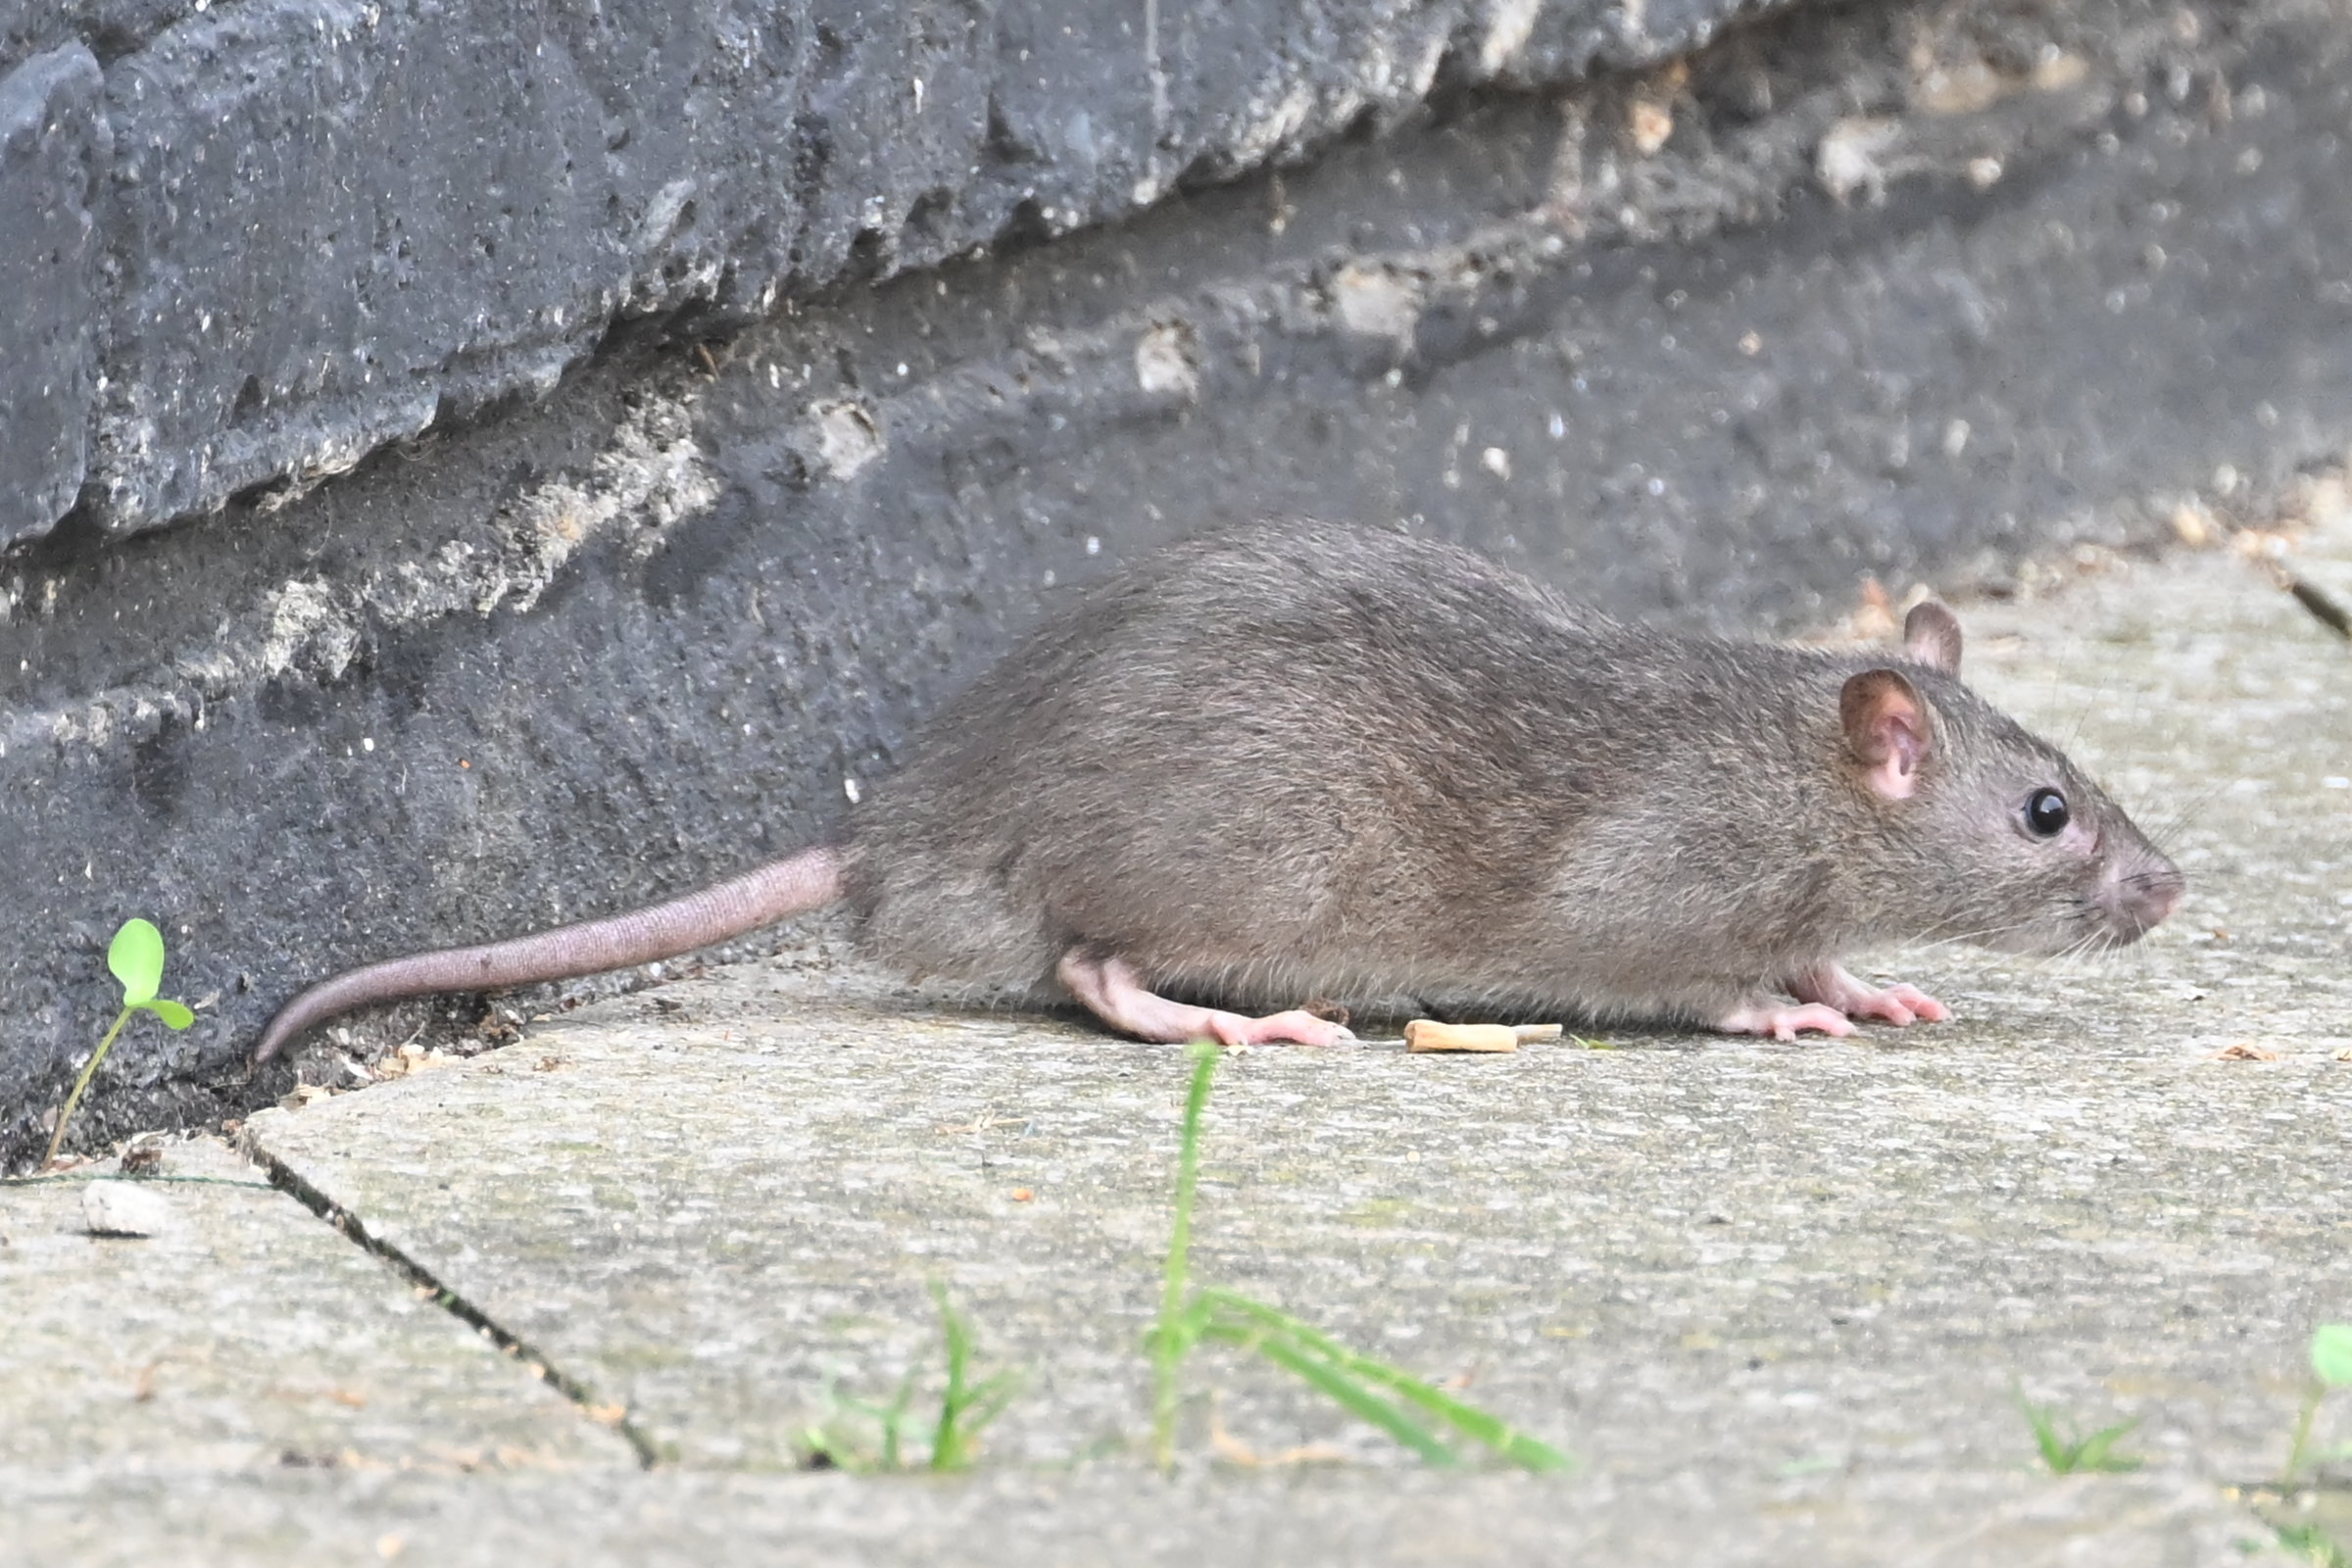 In Tower Hamlets im Osten Londons wurden Ratten gesichtet, die wild herumliefen, nachdem sich Müll angesammelt hatte